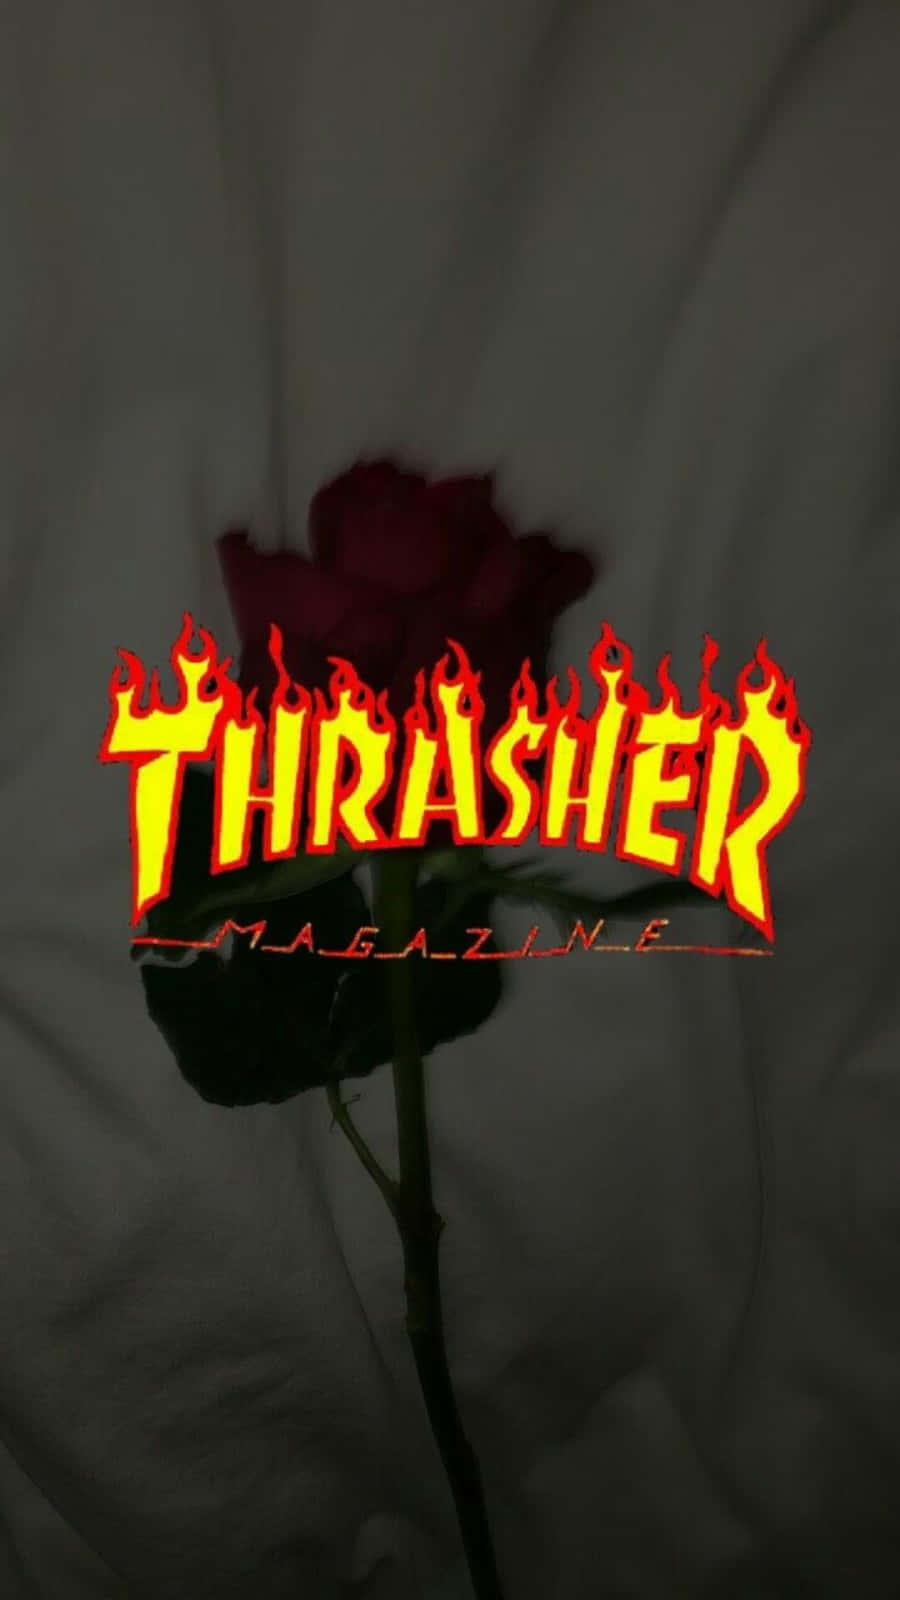 Thrashertidningen - Thrasher - Thrasher - Thrasher - Thrasher -